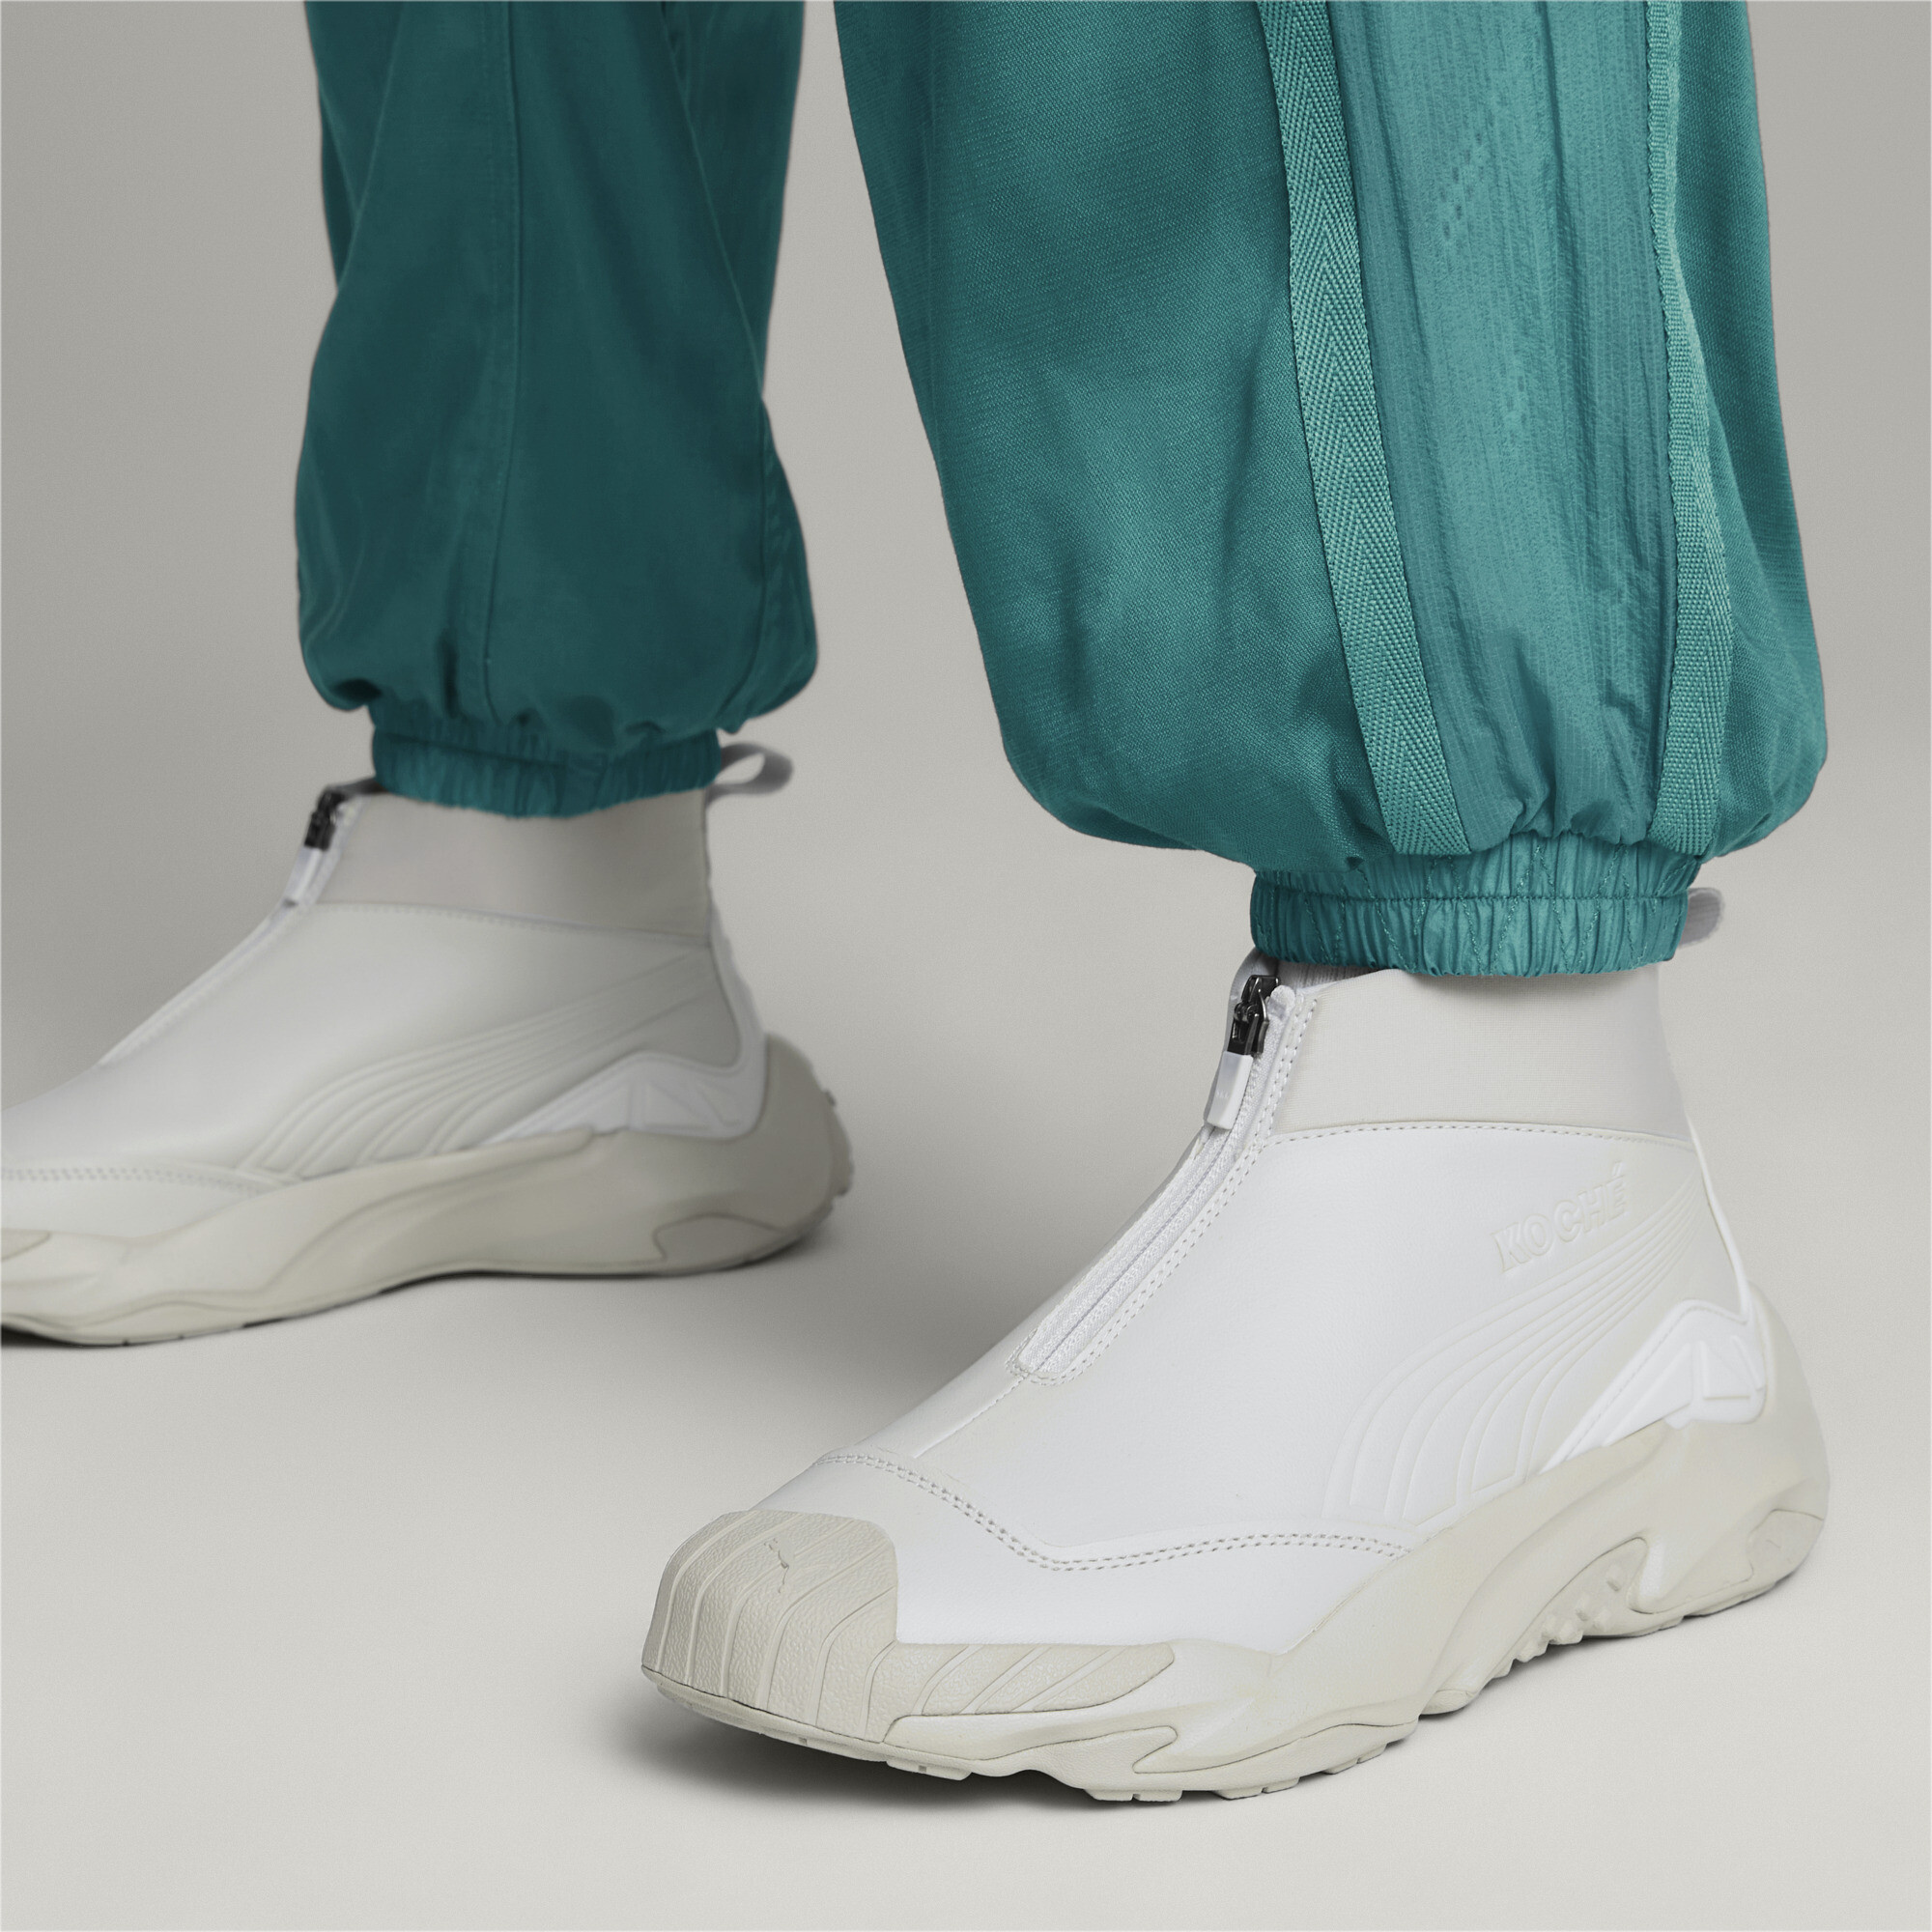 Men's PUMA X KOCHÃ Mid Plexus Sneakers In Gray, Size EU 38